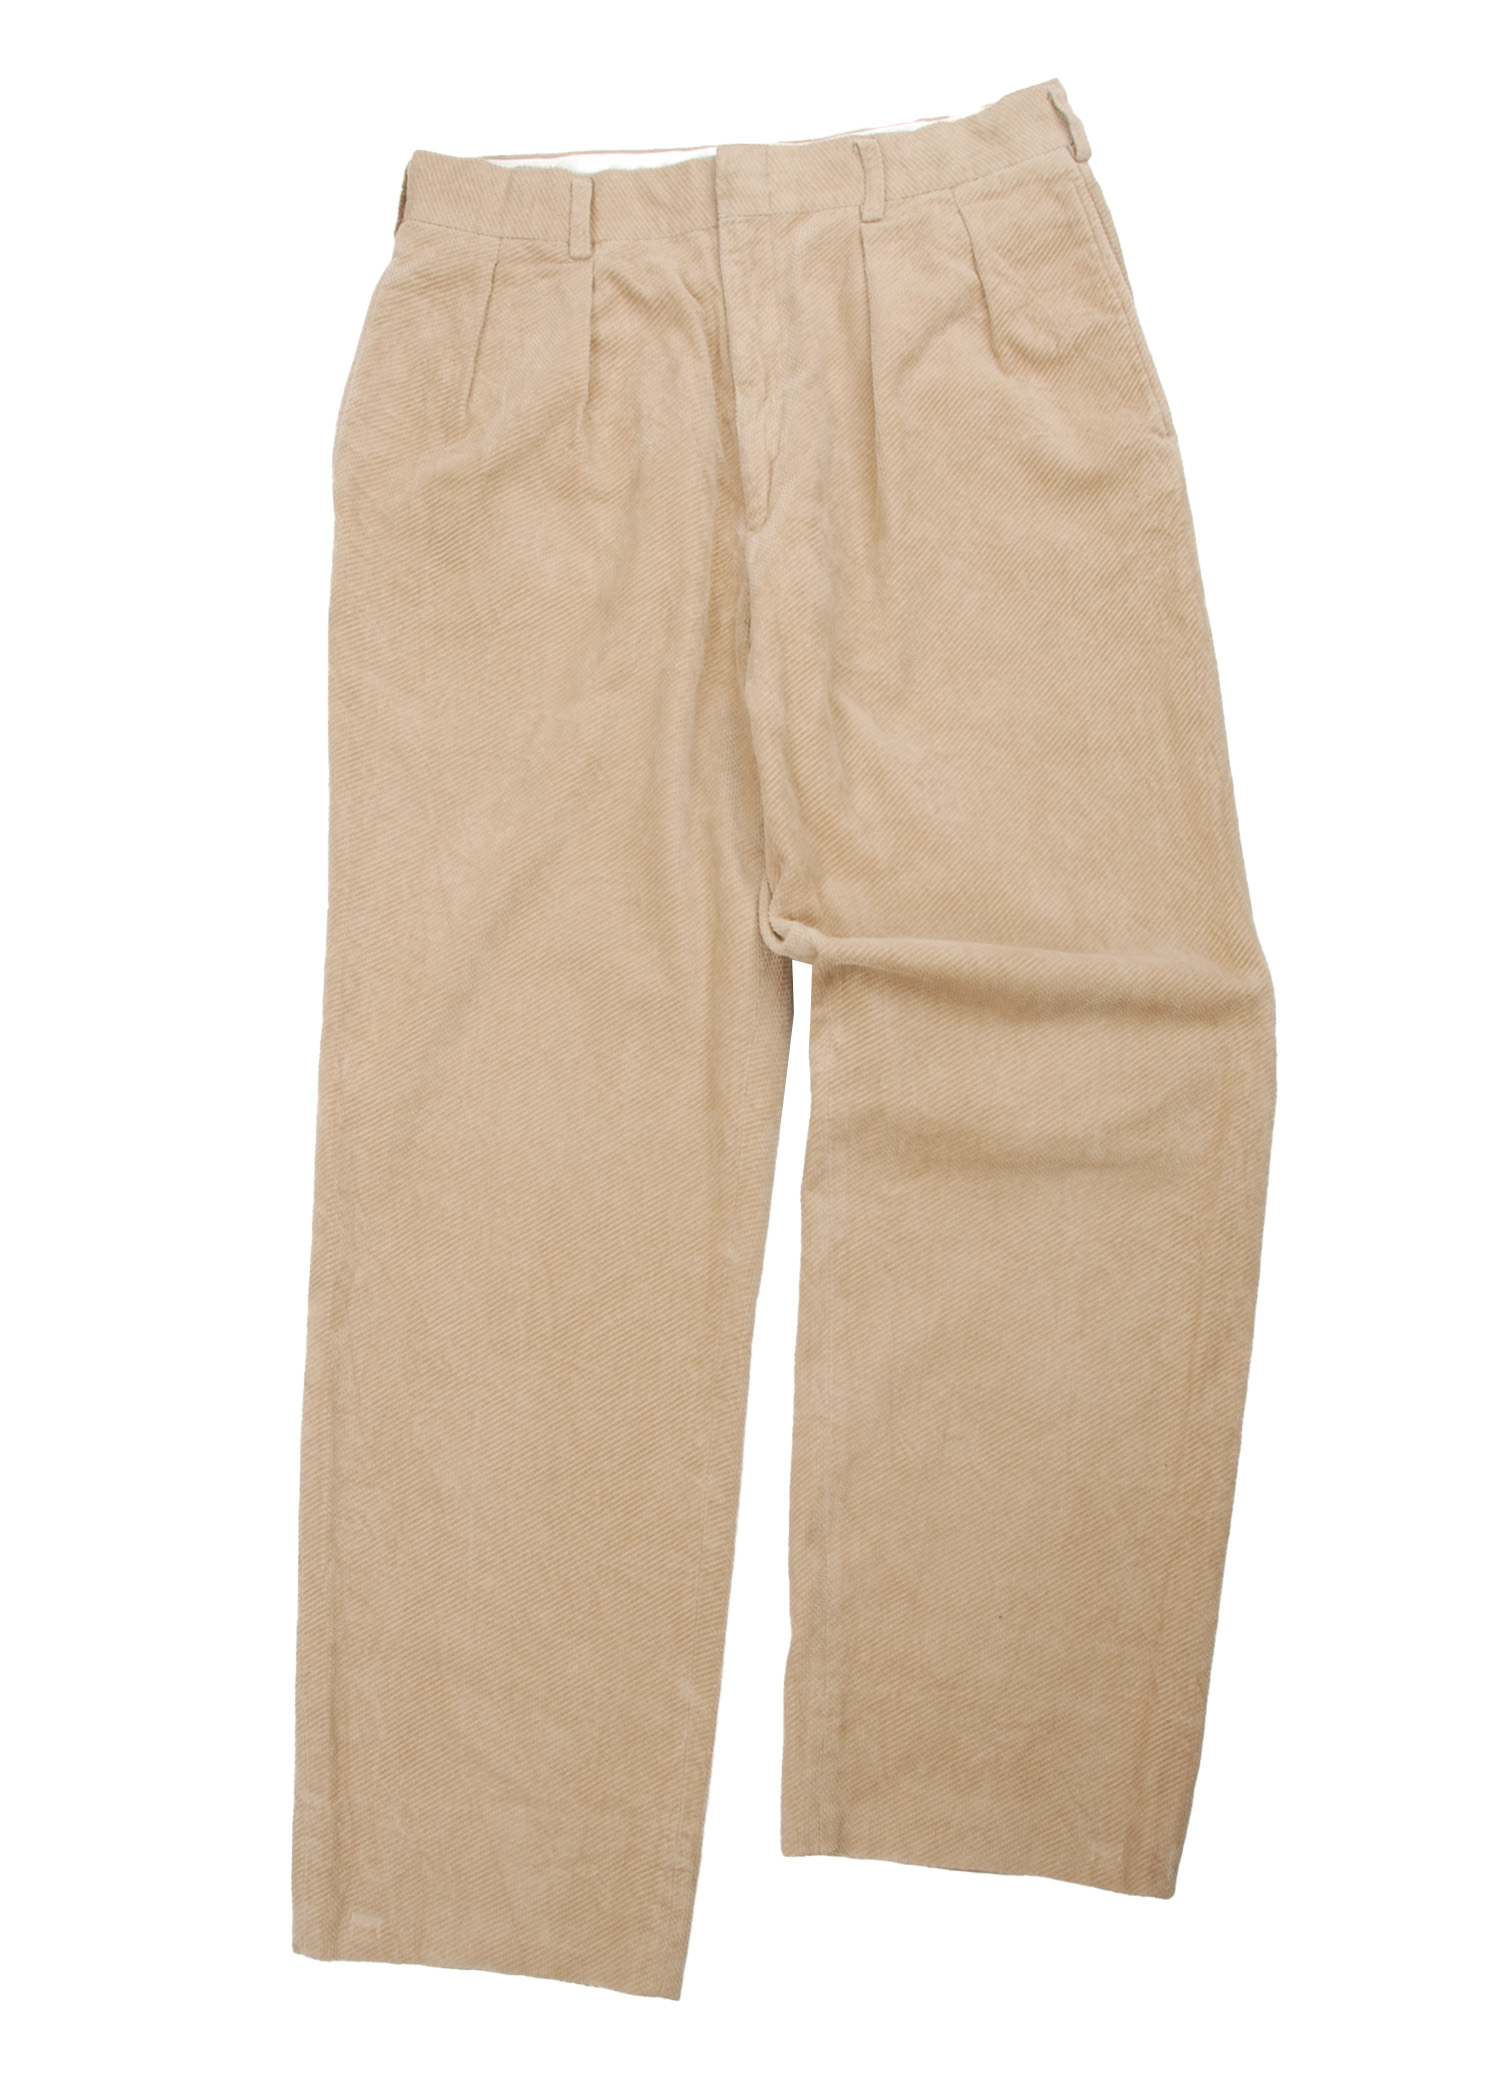 CHAPS by Ralph Lauren 2-tuck corduroy pants